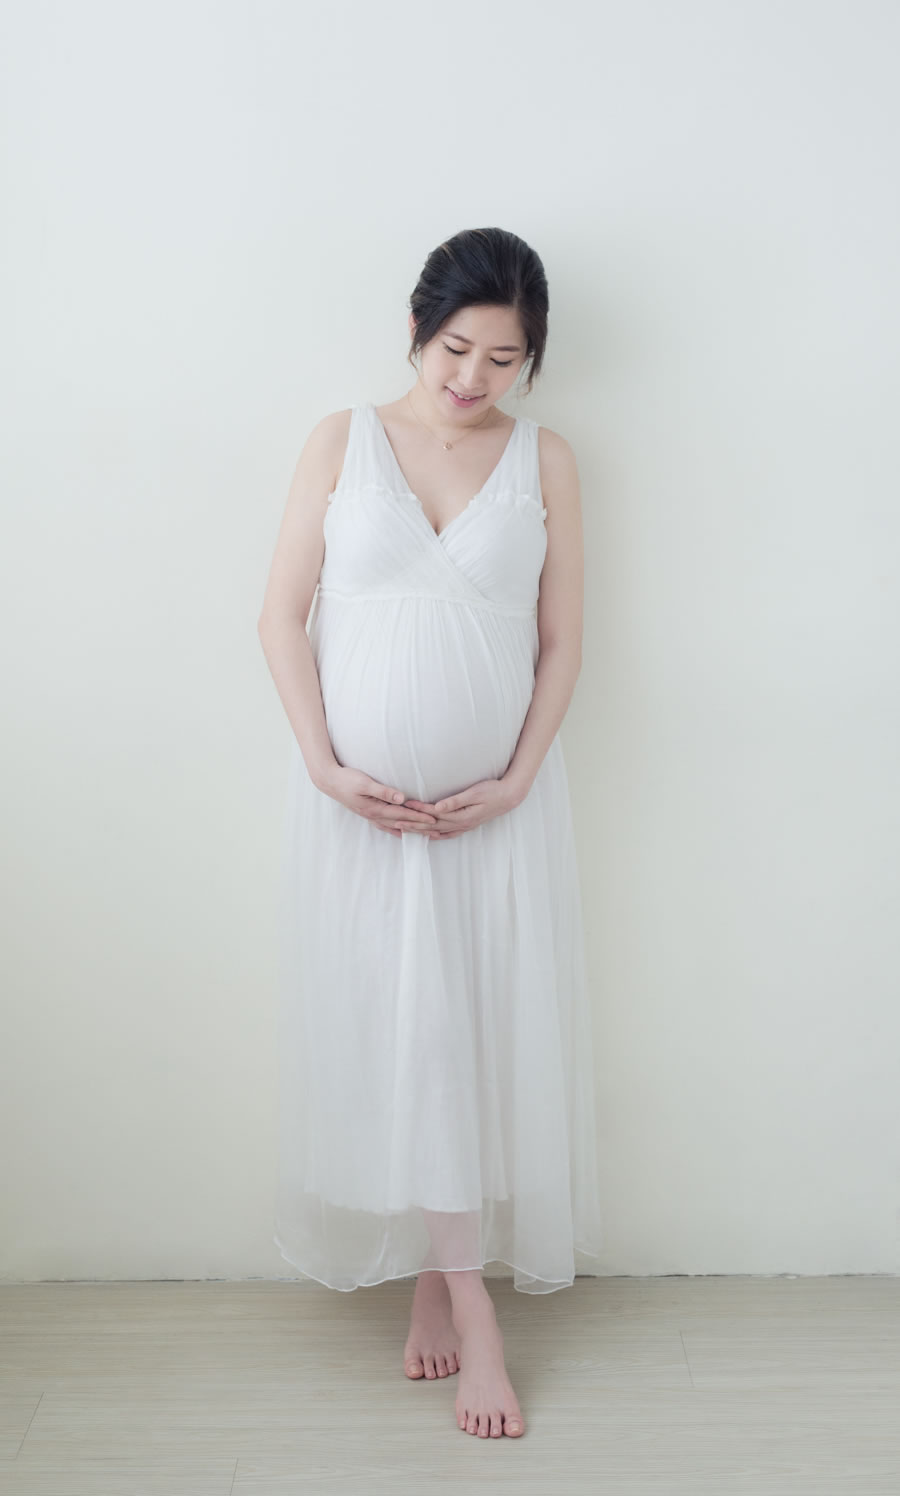 孕婦照 - 懷念起孕期的胎動 隨著肚子越大，你可能會覺得疲倦，整天腰酸背痛、晚上難以入睡，甚至很想趕快把孩子生出來。隨著孩子的誕生，你可能會開始回顧懷孕的照片，不自覺的摸著肚子，懷念起孕期的胎動， 如果你有一張專業的孕婦照，那將是永遠值得珍藏的美好回憶。